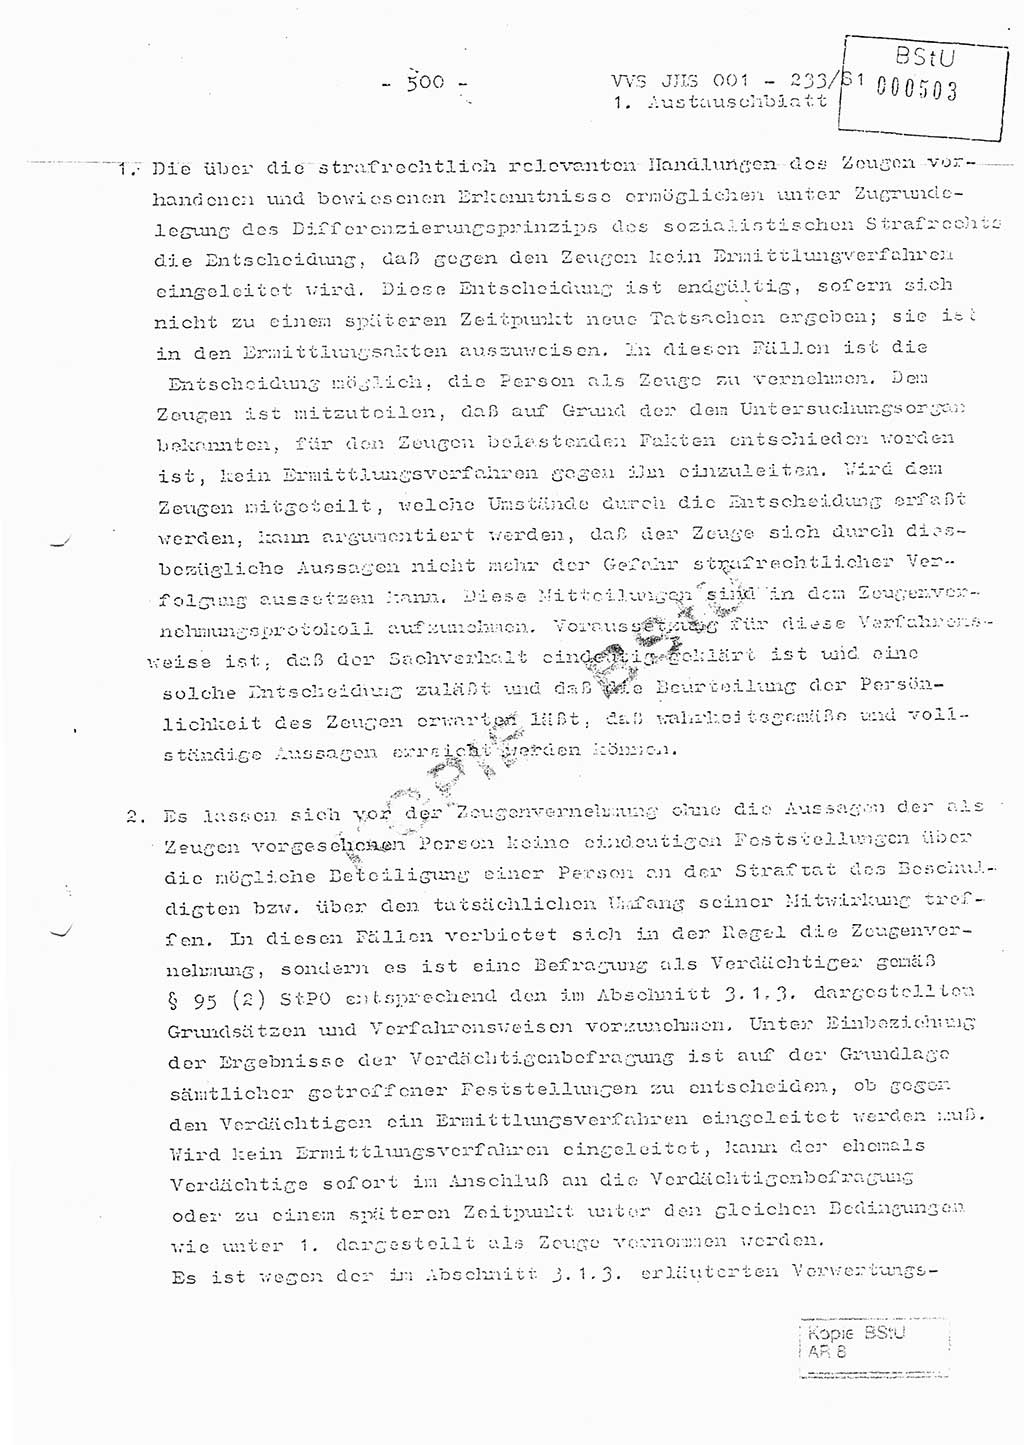 Dissertation Oberstleutnant Horst Zank (JHS), Oberstleutnant Dr. Karl-Heinz Knoblauch (JHS), Oberstleutnant Gustav-Adolf Kowalewski (HA Ⅸ), Oberstleutnant Wolfgang Plötner (HA Ⅸ), Ministerium für Staatssicherheit (MfS) [Deutsche Demokratische Republik (DDR)], Juristische Hochschule (JHS), Vertrauliche Verschlußsache (VVS) o001-233/81, Potsdam 1981, Blatt 500 (Diss. MfS DDR JHS VVS o001-233/81 1981, Bl. 500)